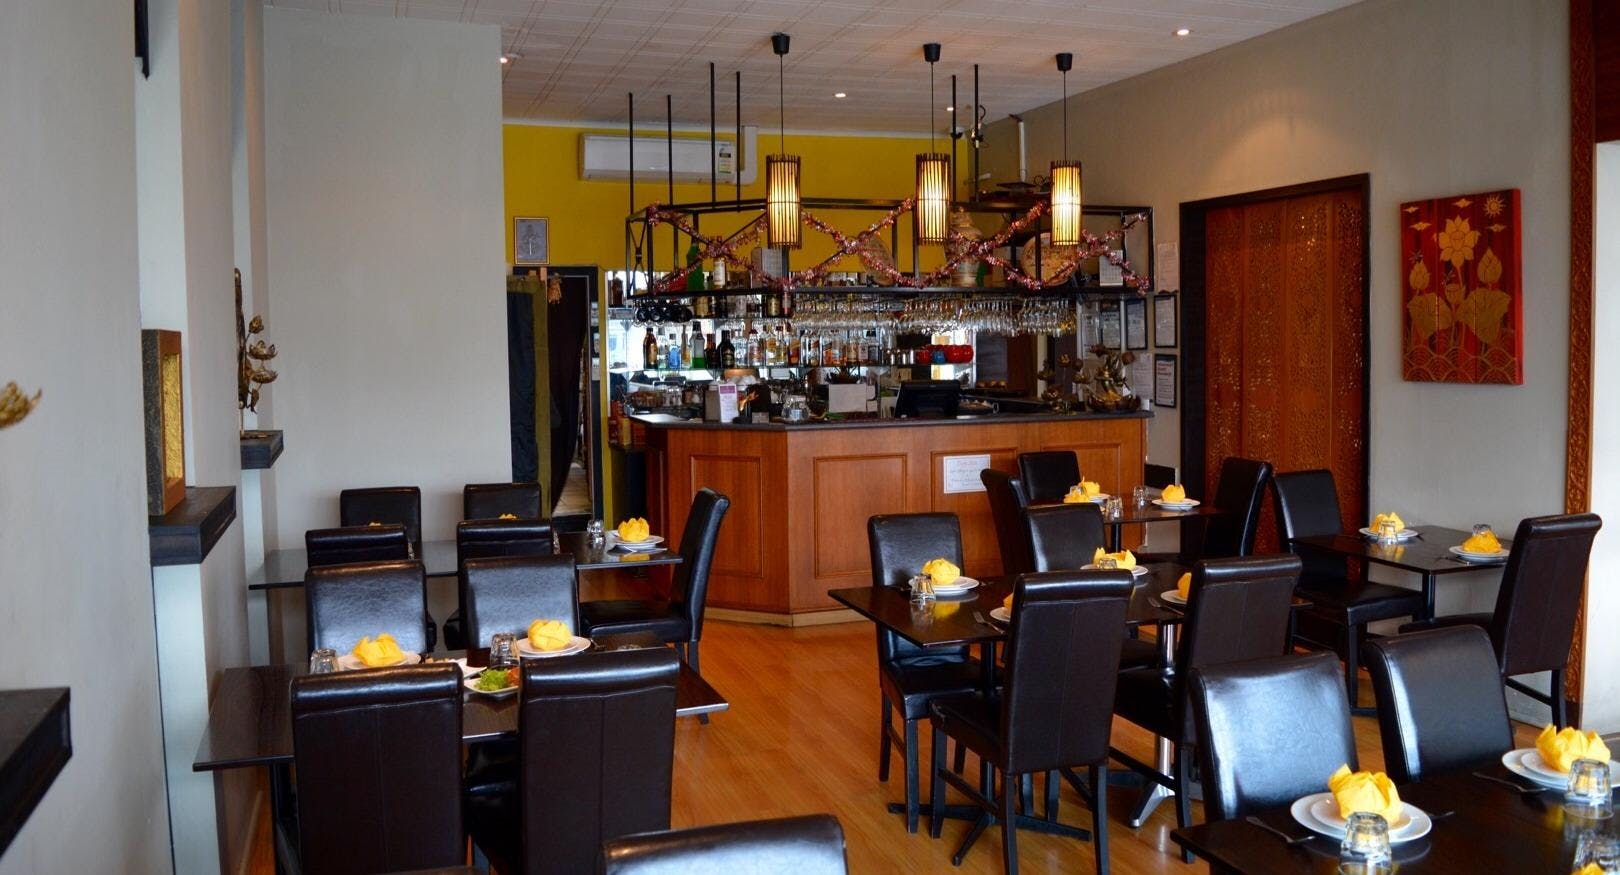 Photo of restaurant Siam Terrace in Boronia, Melbourne